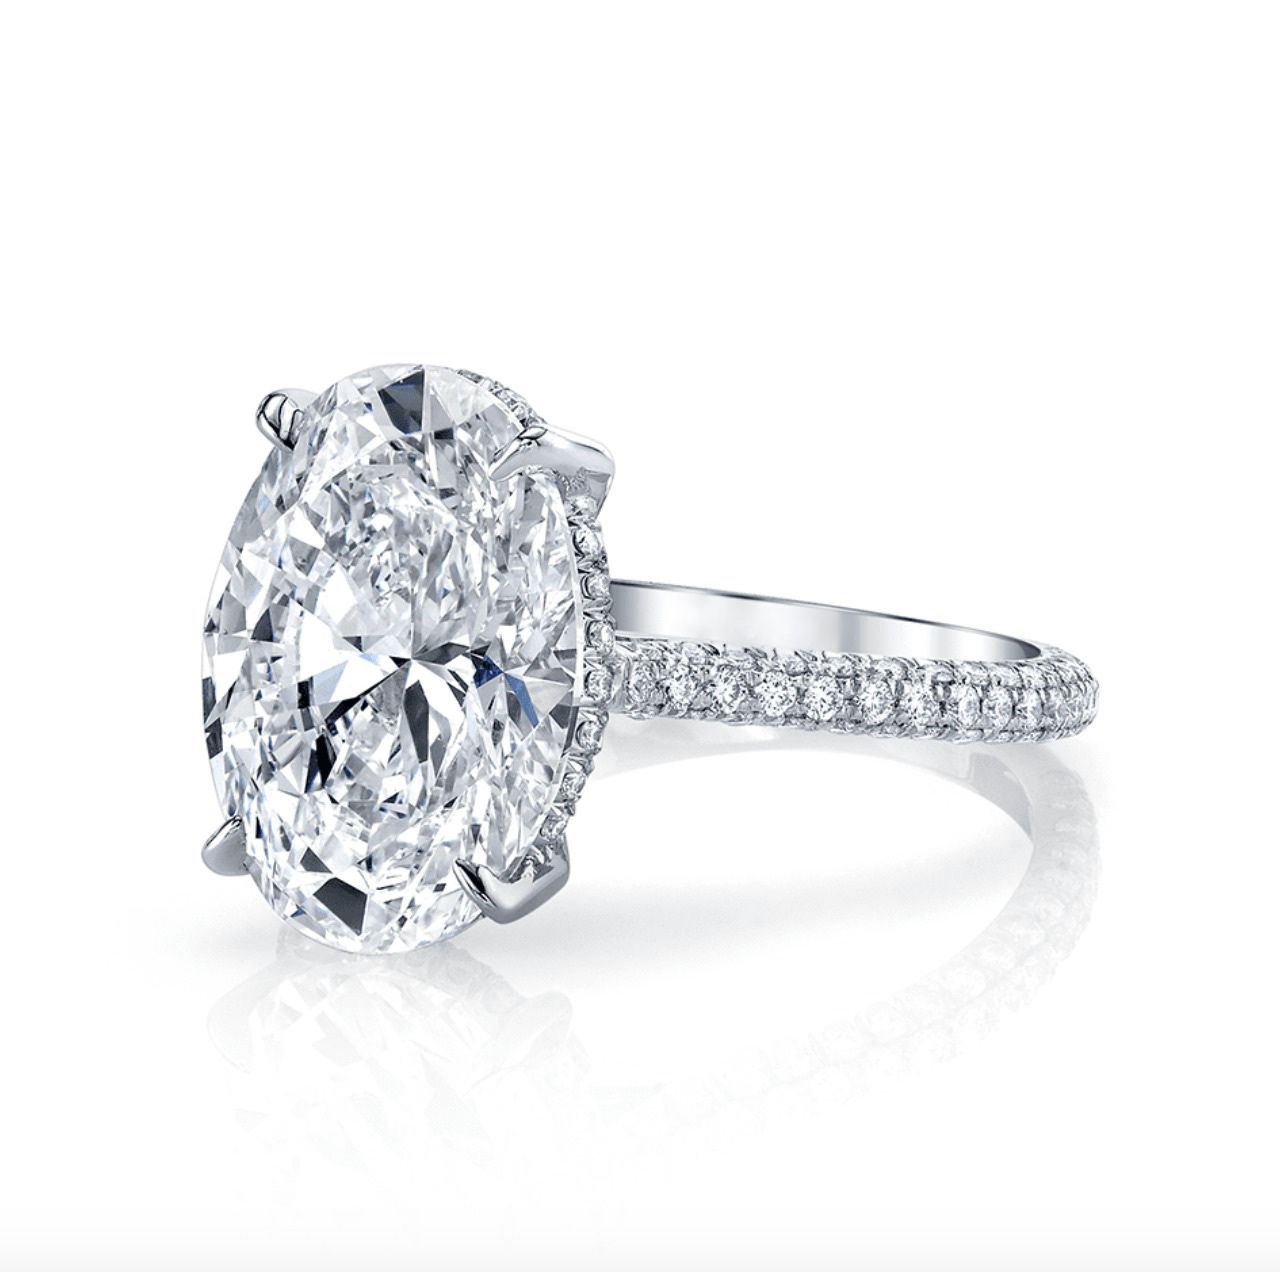 WOKEZ Engagement Wedding Ring Engagement Ring Wedding Rings For Women Fake  Engagement Ring Of Women (Gem Color : Style 12, Ring Size : 5) : Amazon.de:  Fashion